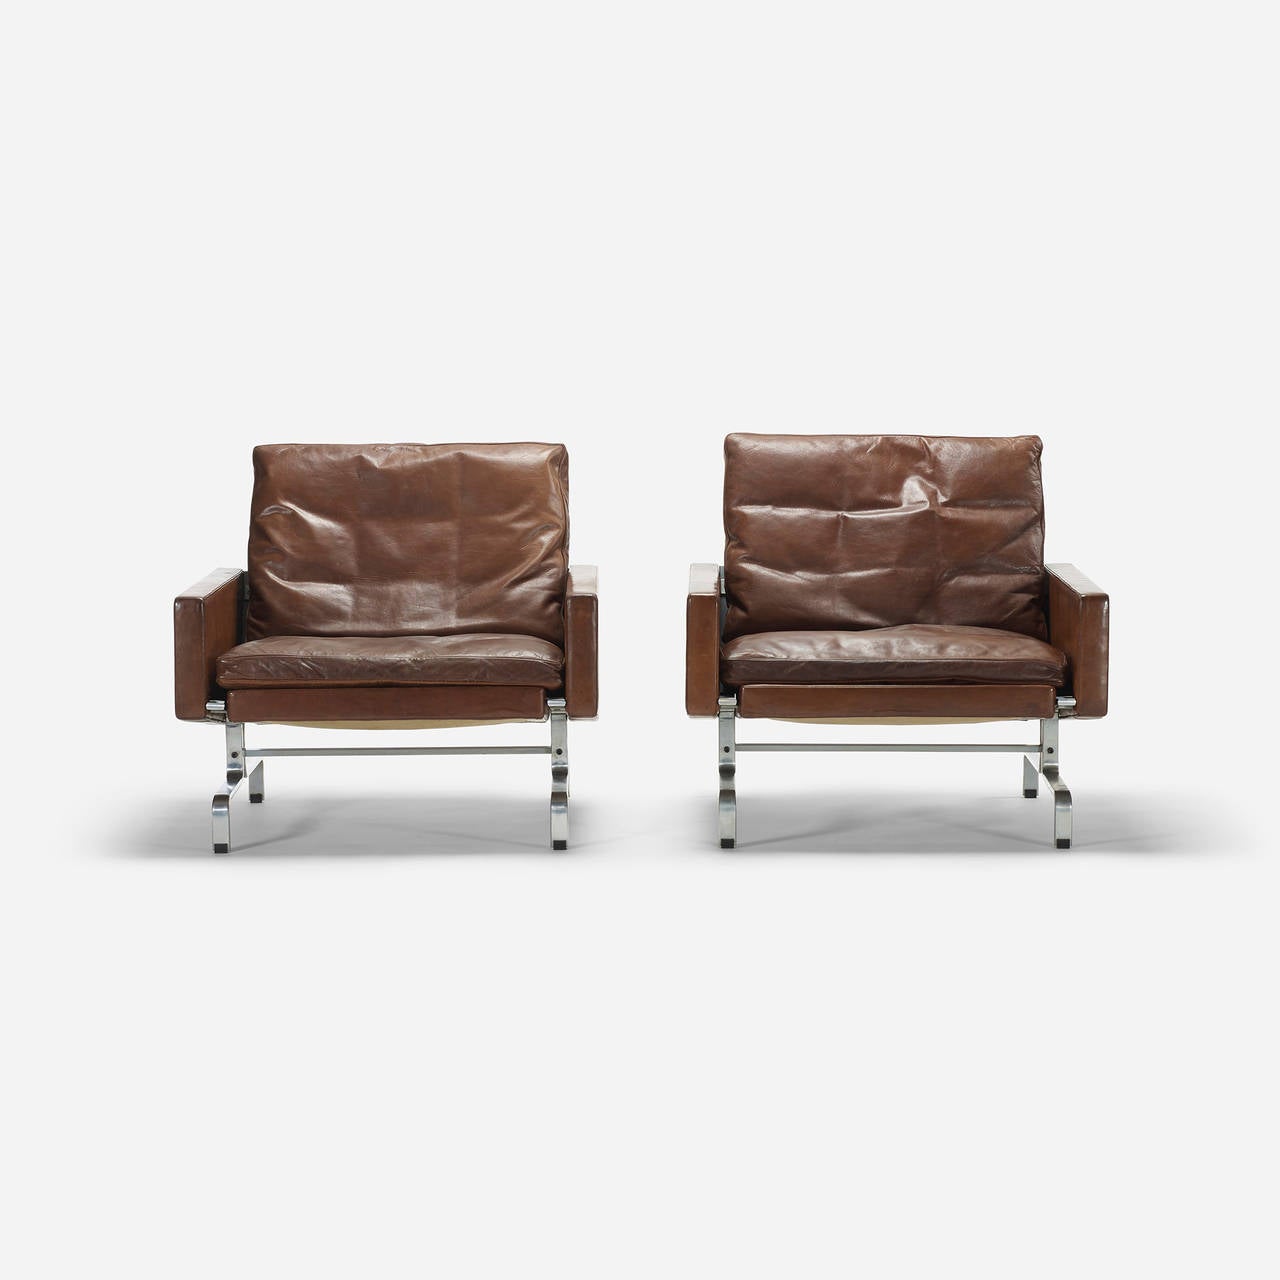 PK-31 lounge chairs, pair by Poul Kjaerholm for E. Kold Christensen.